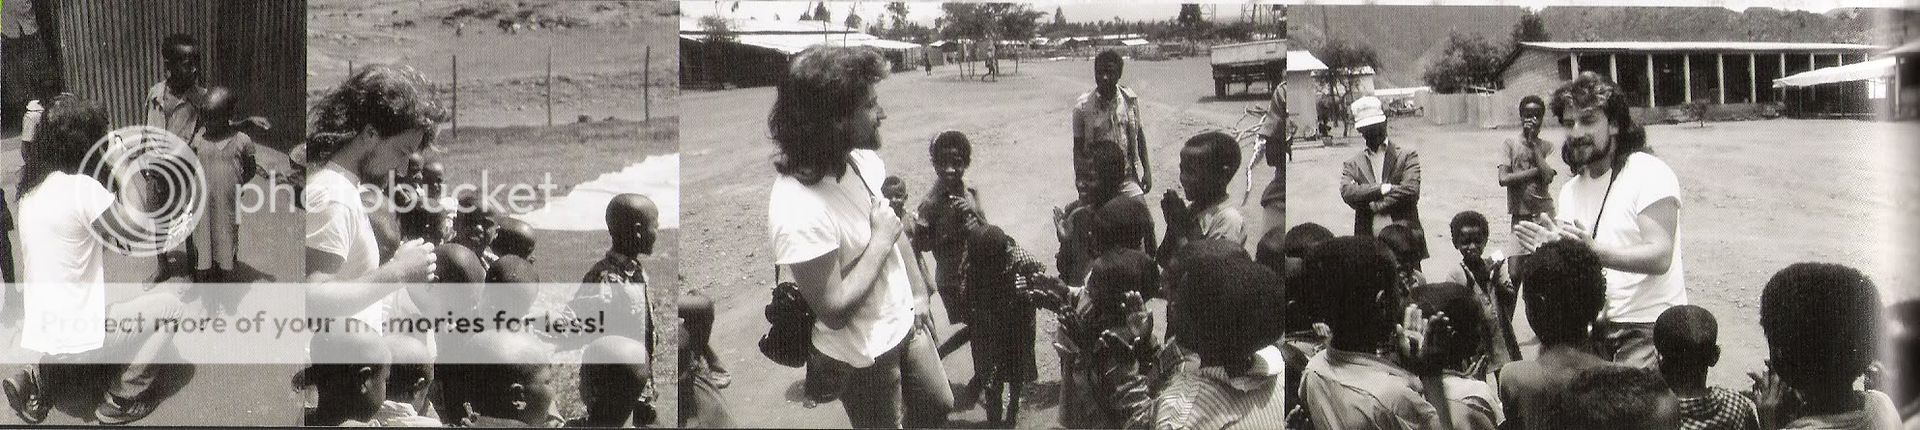 bonoafricachildren1986x4.jpg